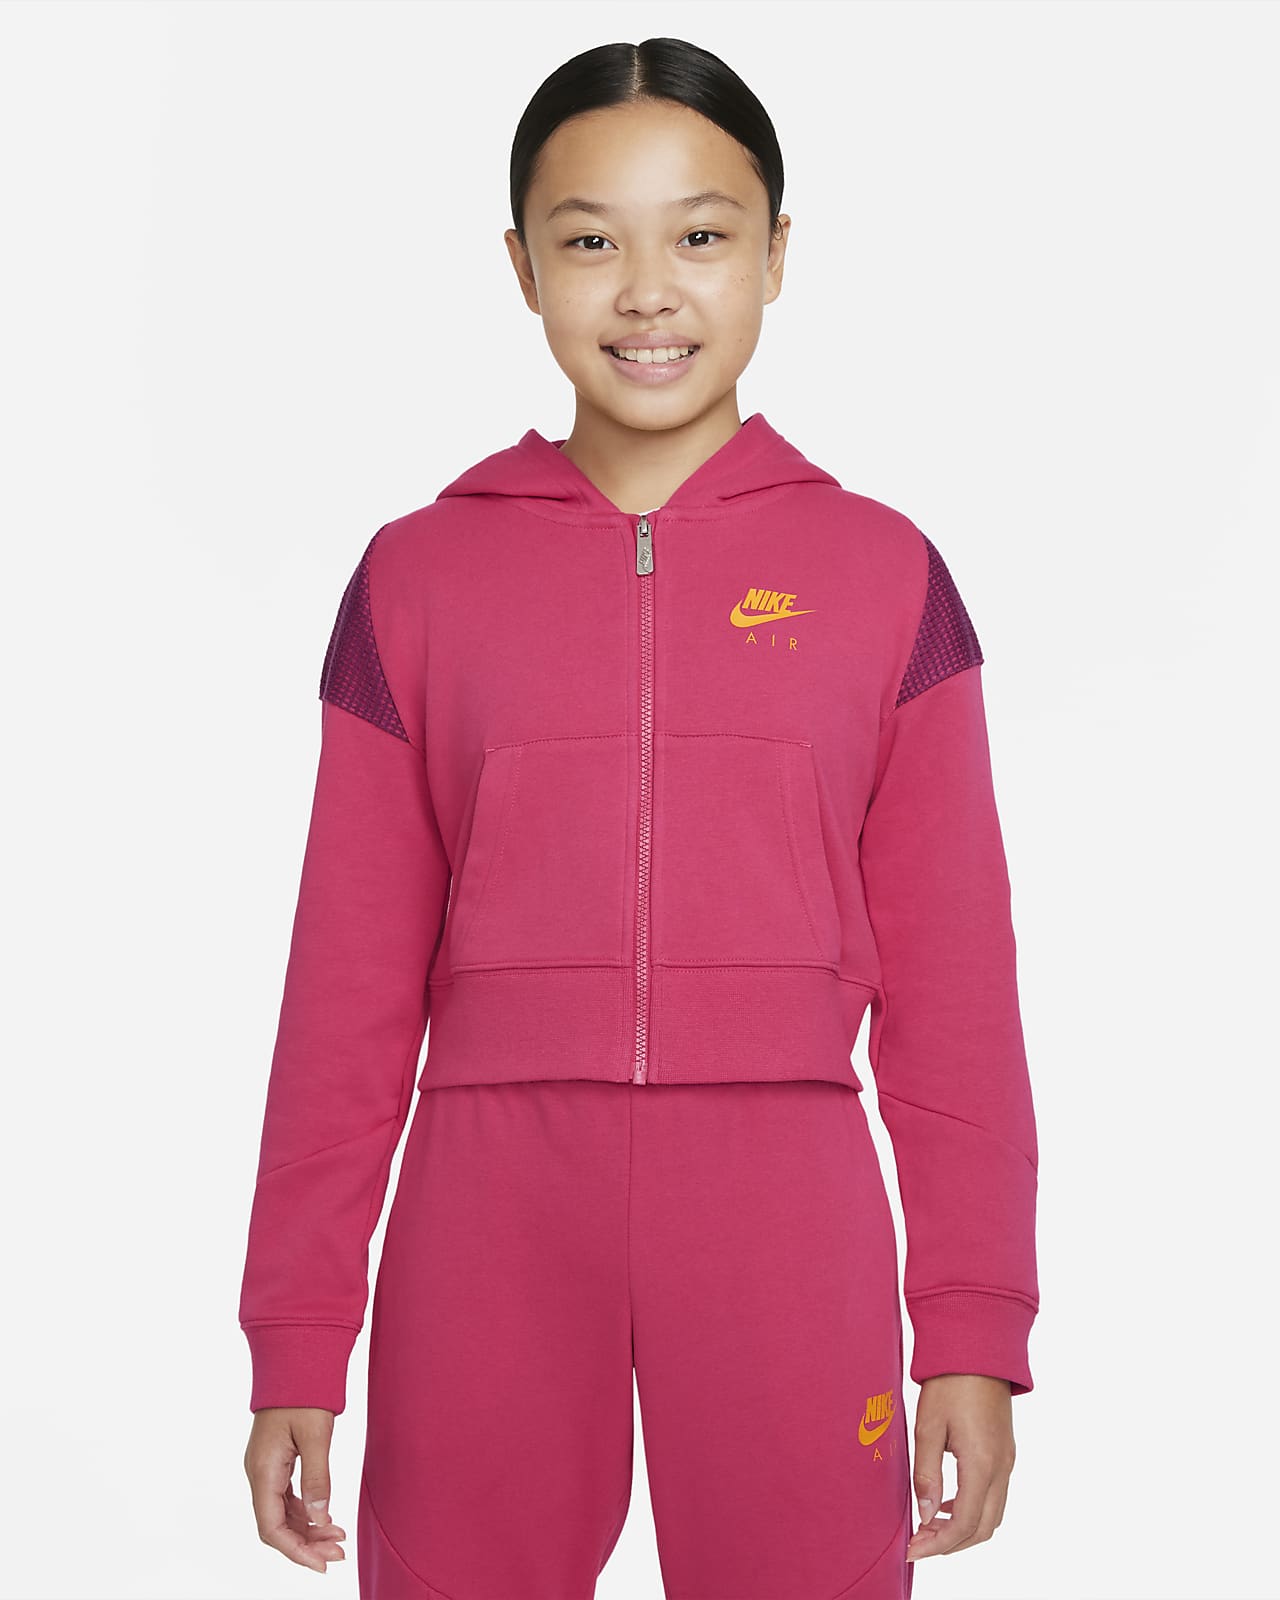 Nike Air 大童 (女童) 法國毛圈布全長式拉鍊連帽上衣